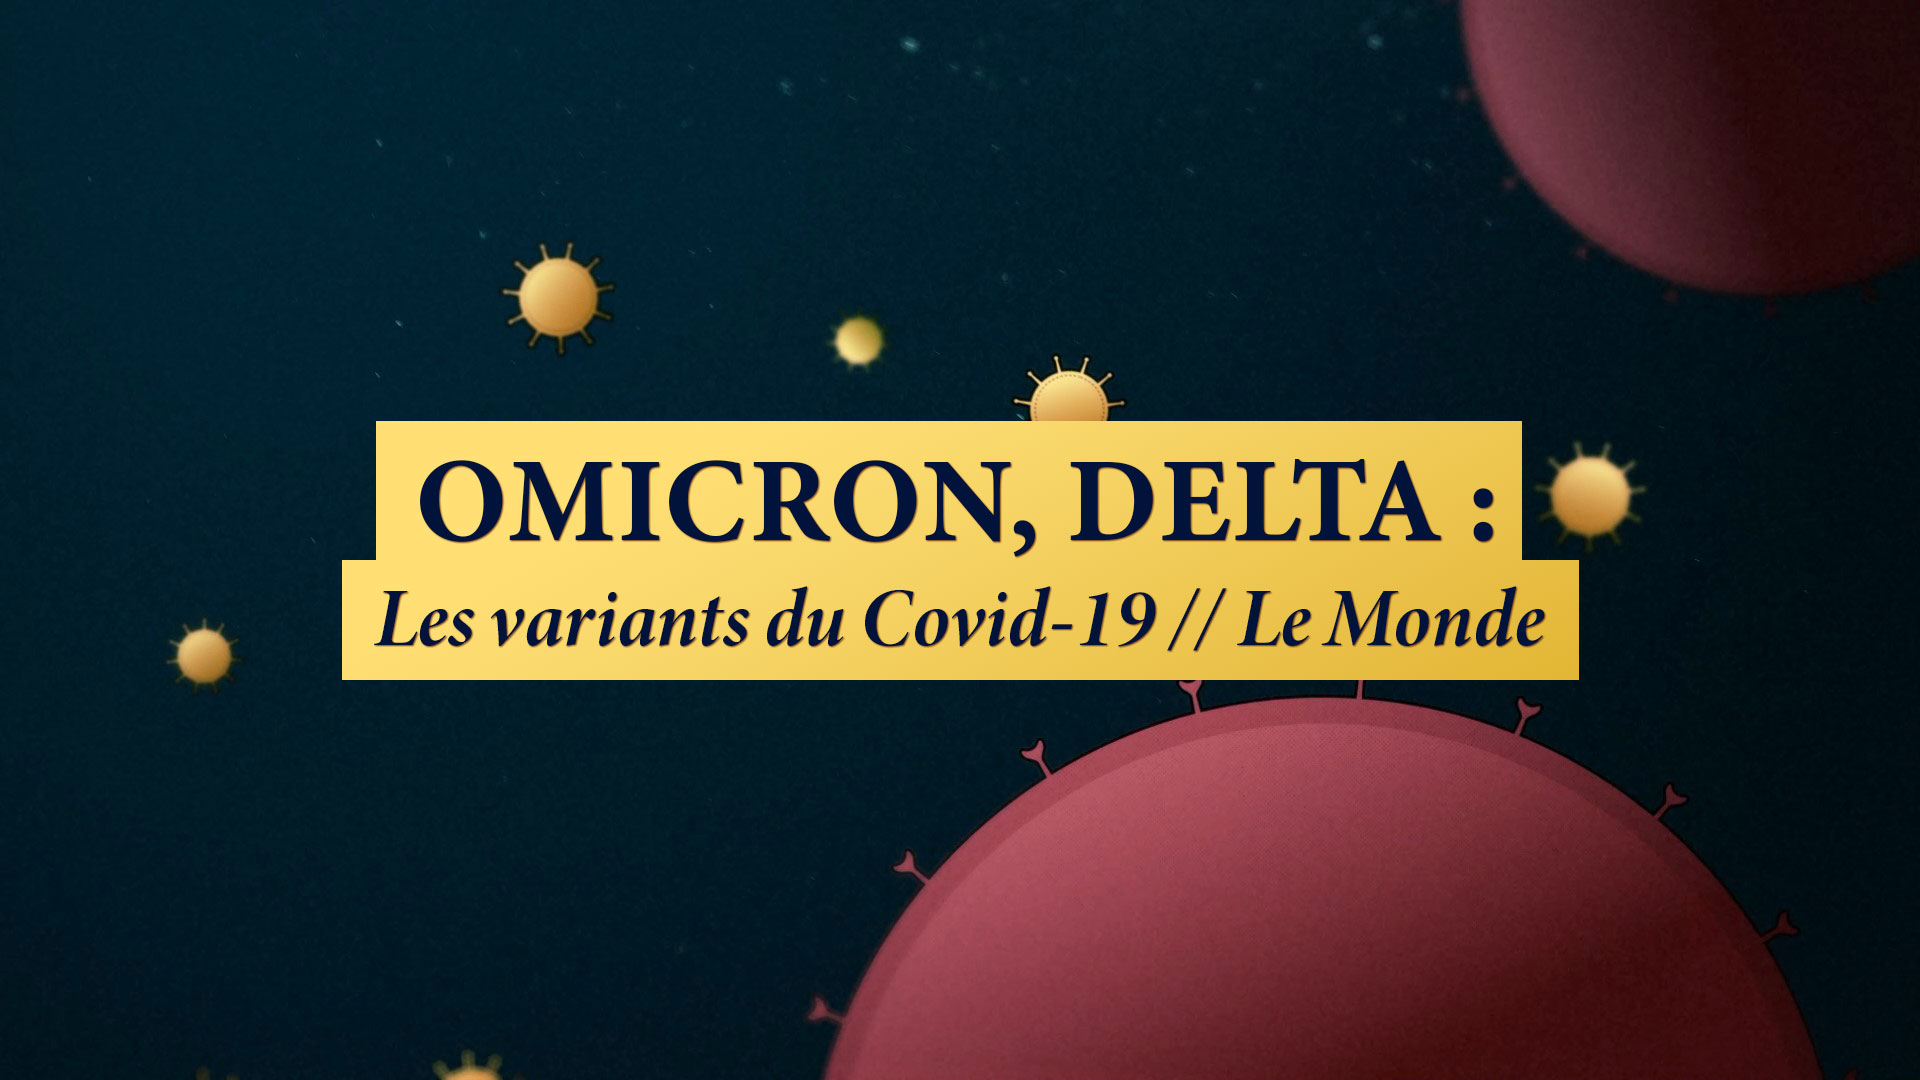 OMICRON, DELTA : LES VARIANTS DU COVID-19 // LE MONDE